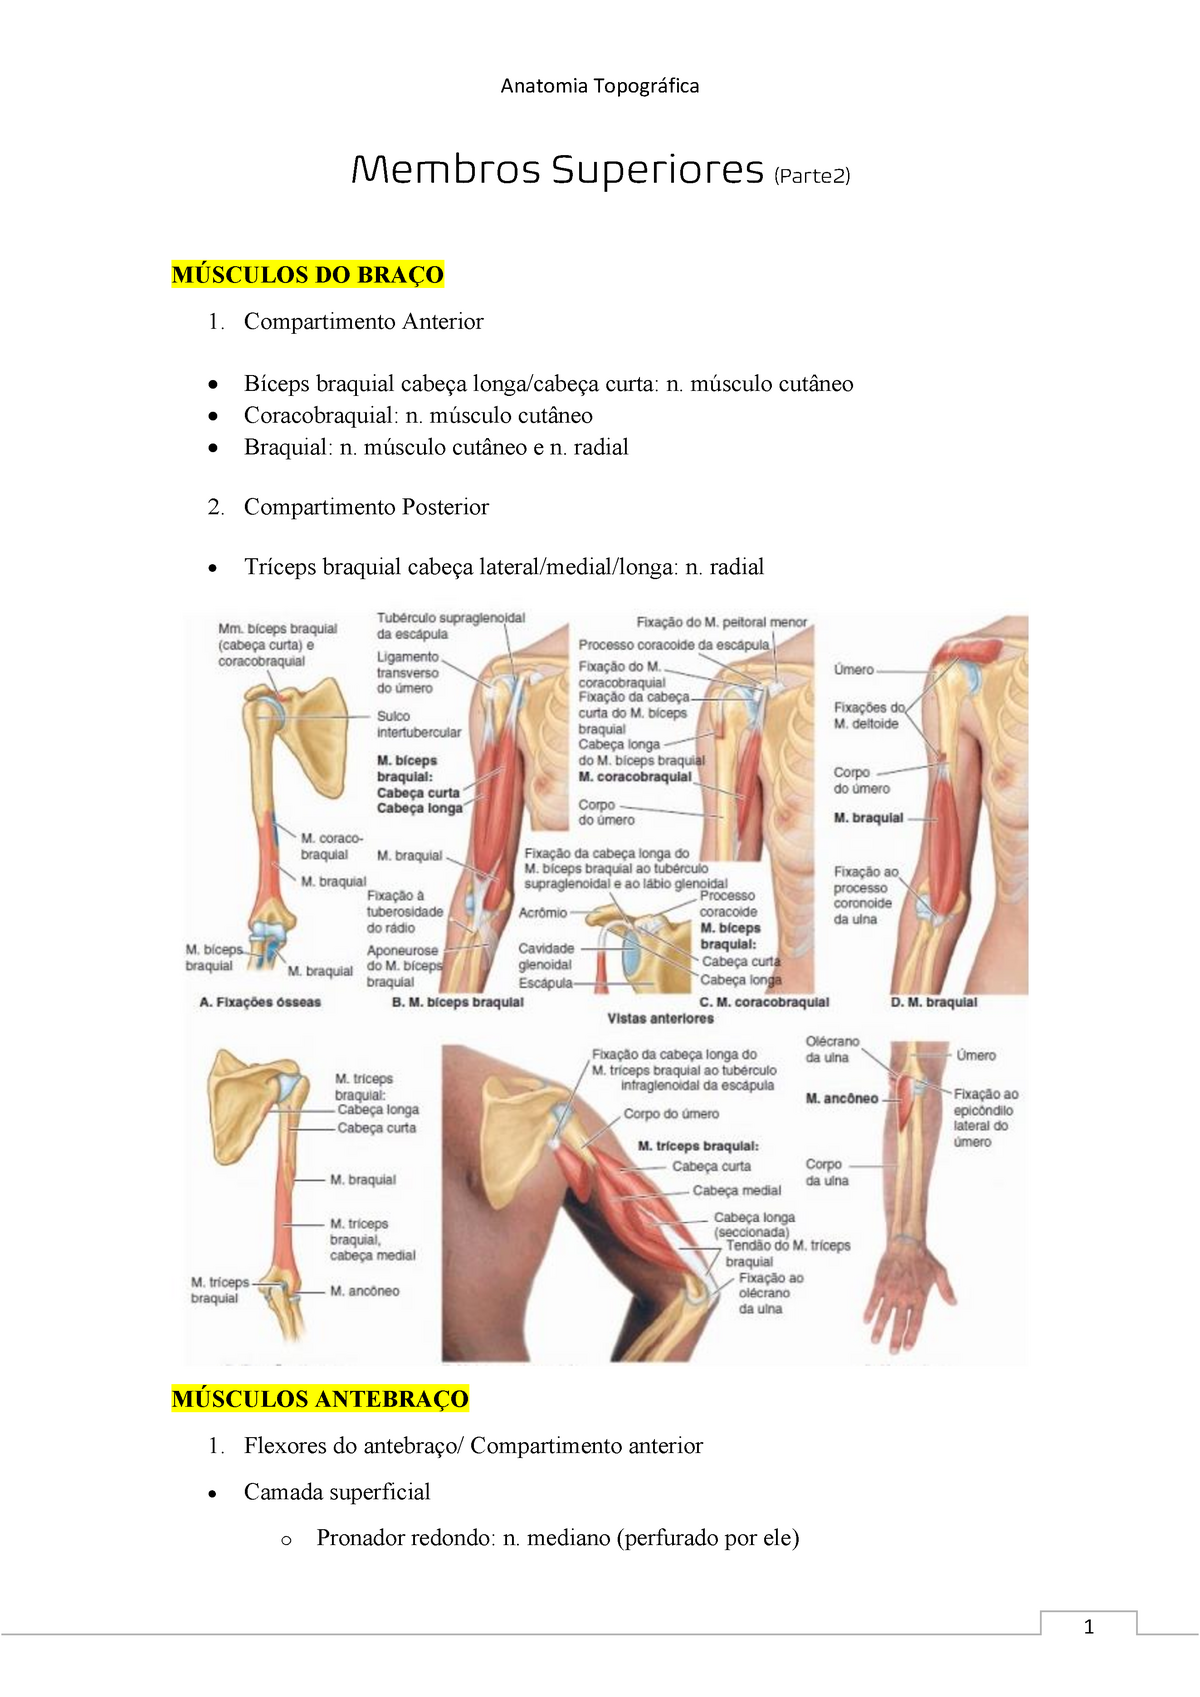 Anatomia do bíceps e tríceps